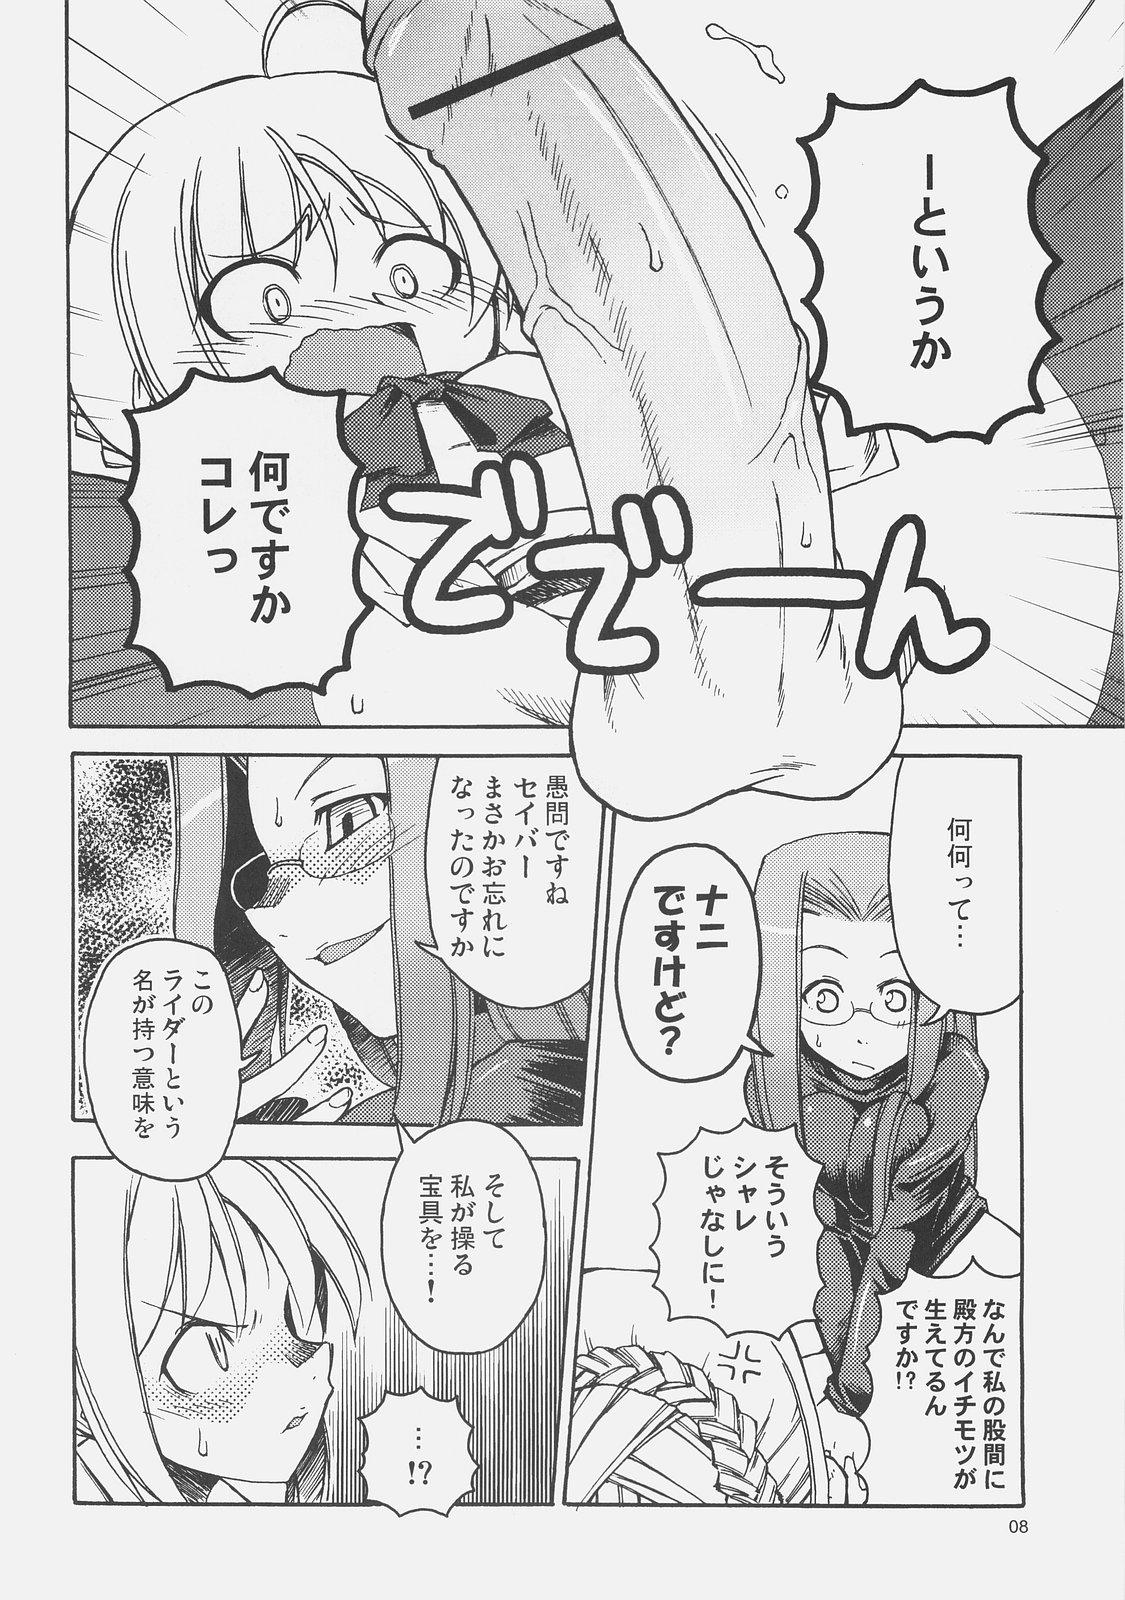 Wet Cunts Kishi to Kihei no Ichinichi - Fate hollow ataraxia Cartoon - Page 7